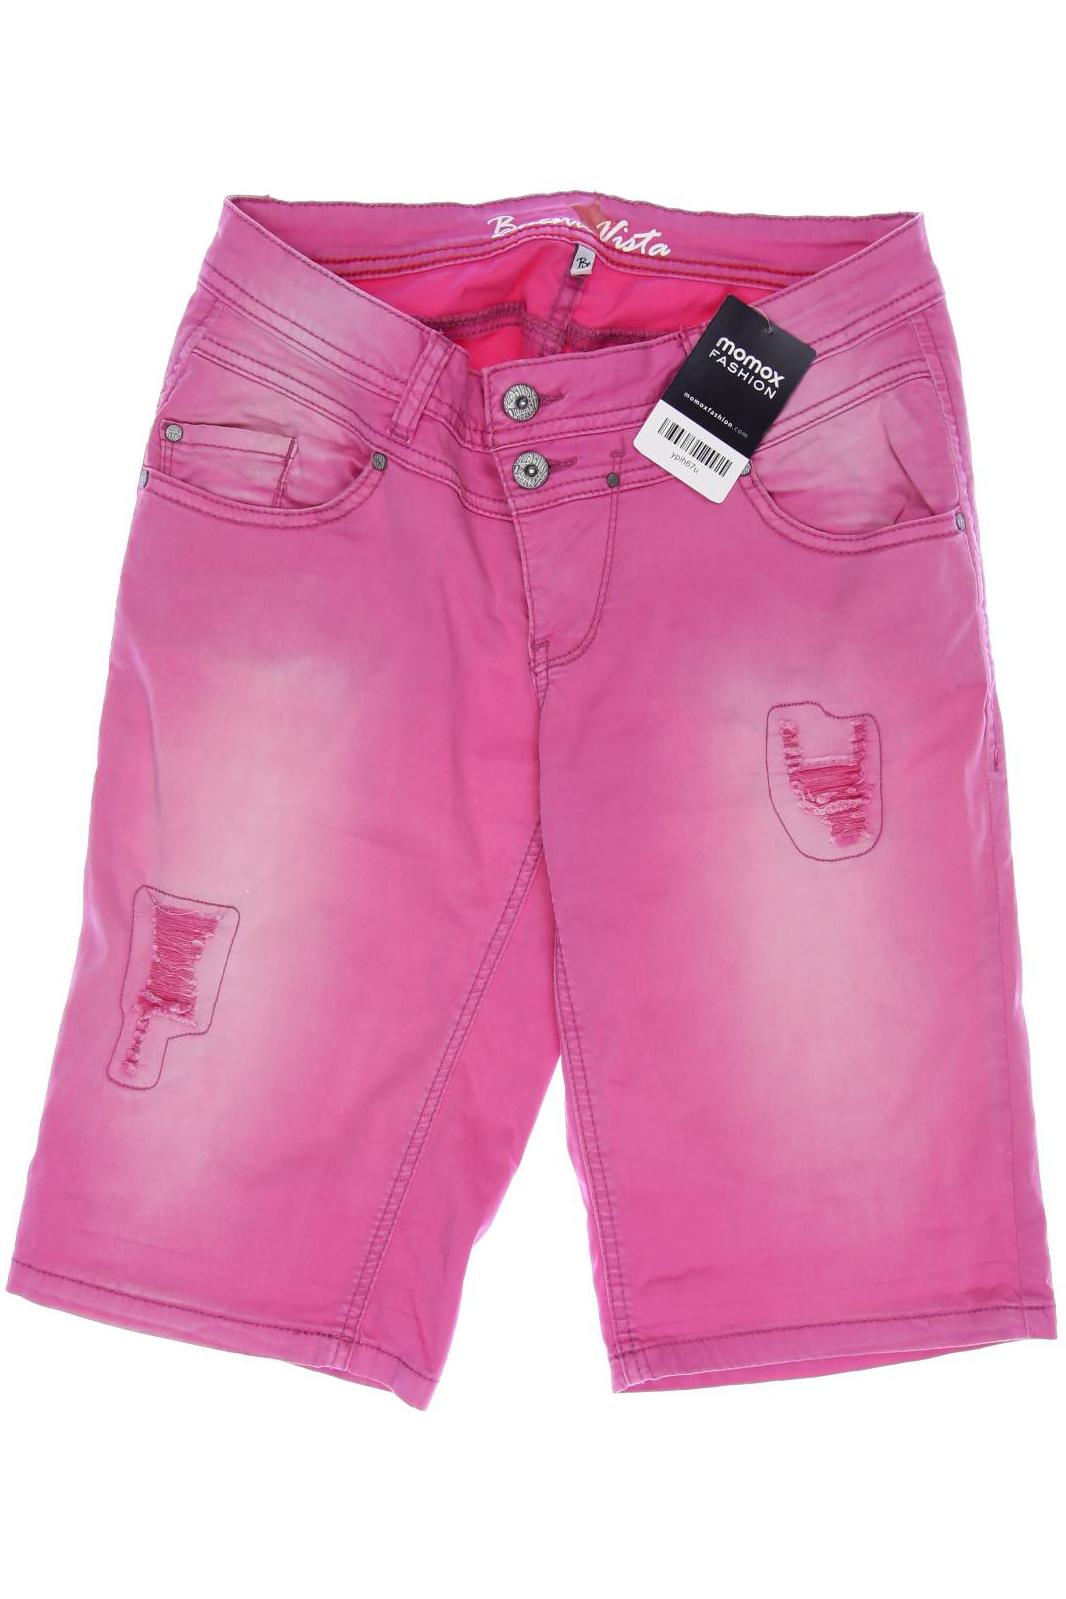 Buena Vista Damen Shorts, pink von Buena Vista